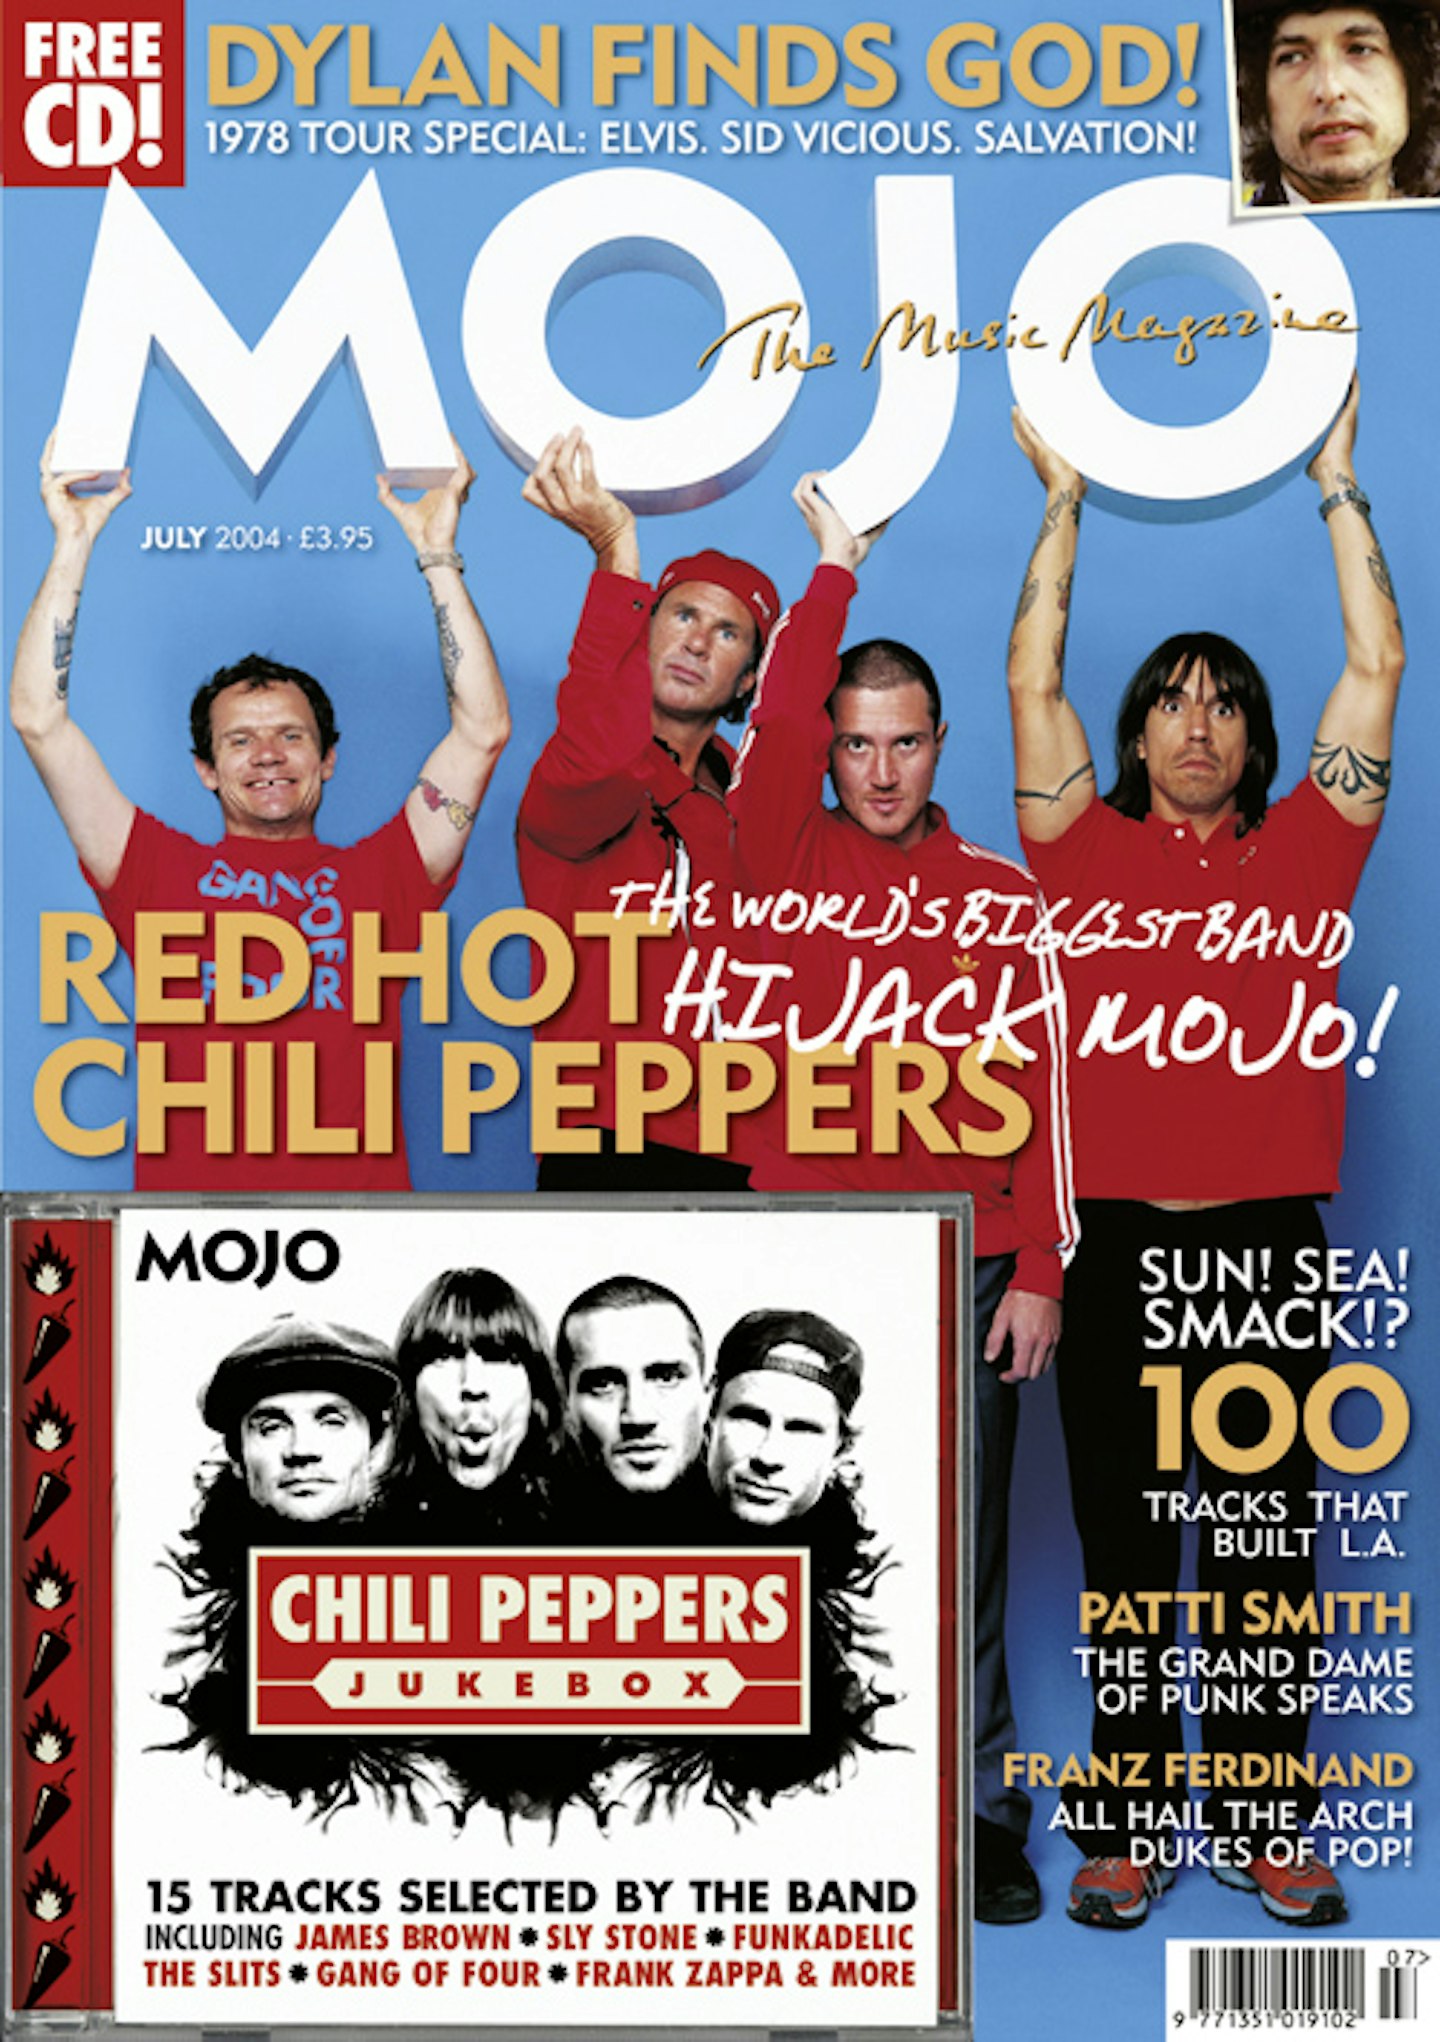 MOJO Issue 128 / July 2004